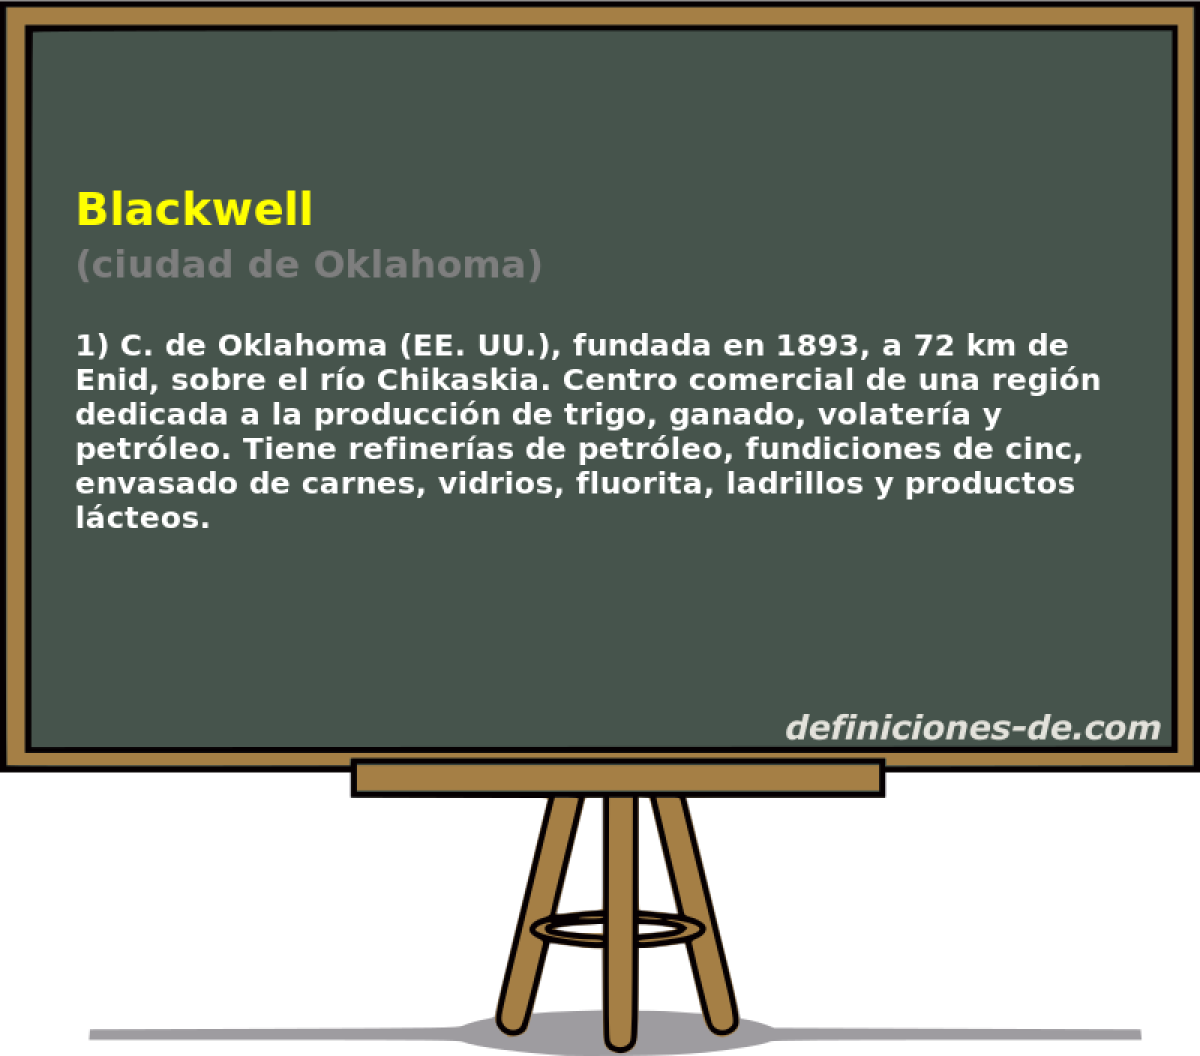 Blackwell (ciudad de Oklahoma)